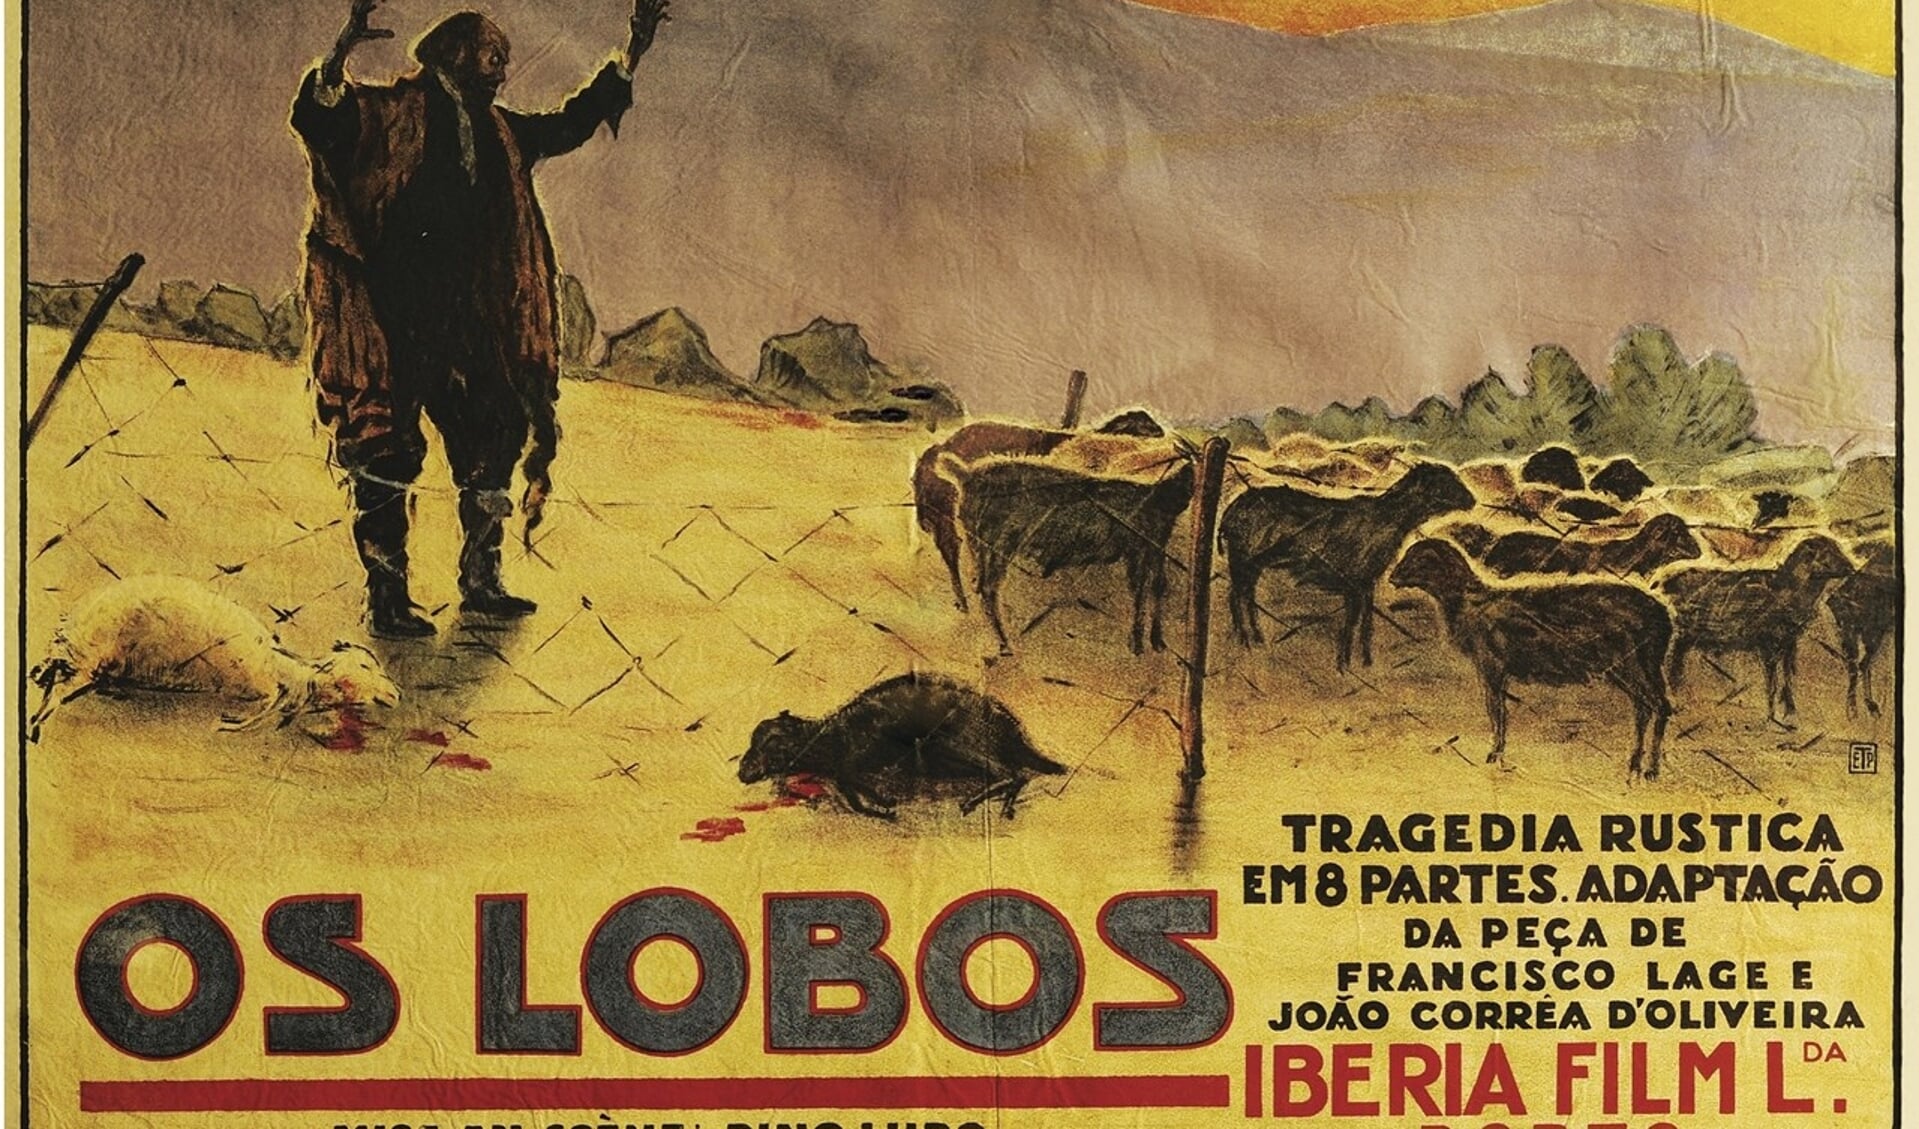 Os lobos, een opmerkelijke film. Foto: PR